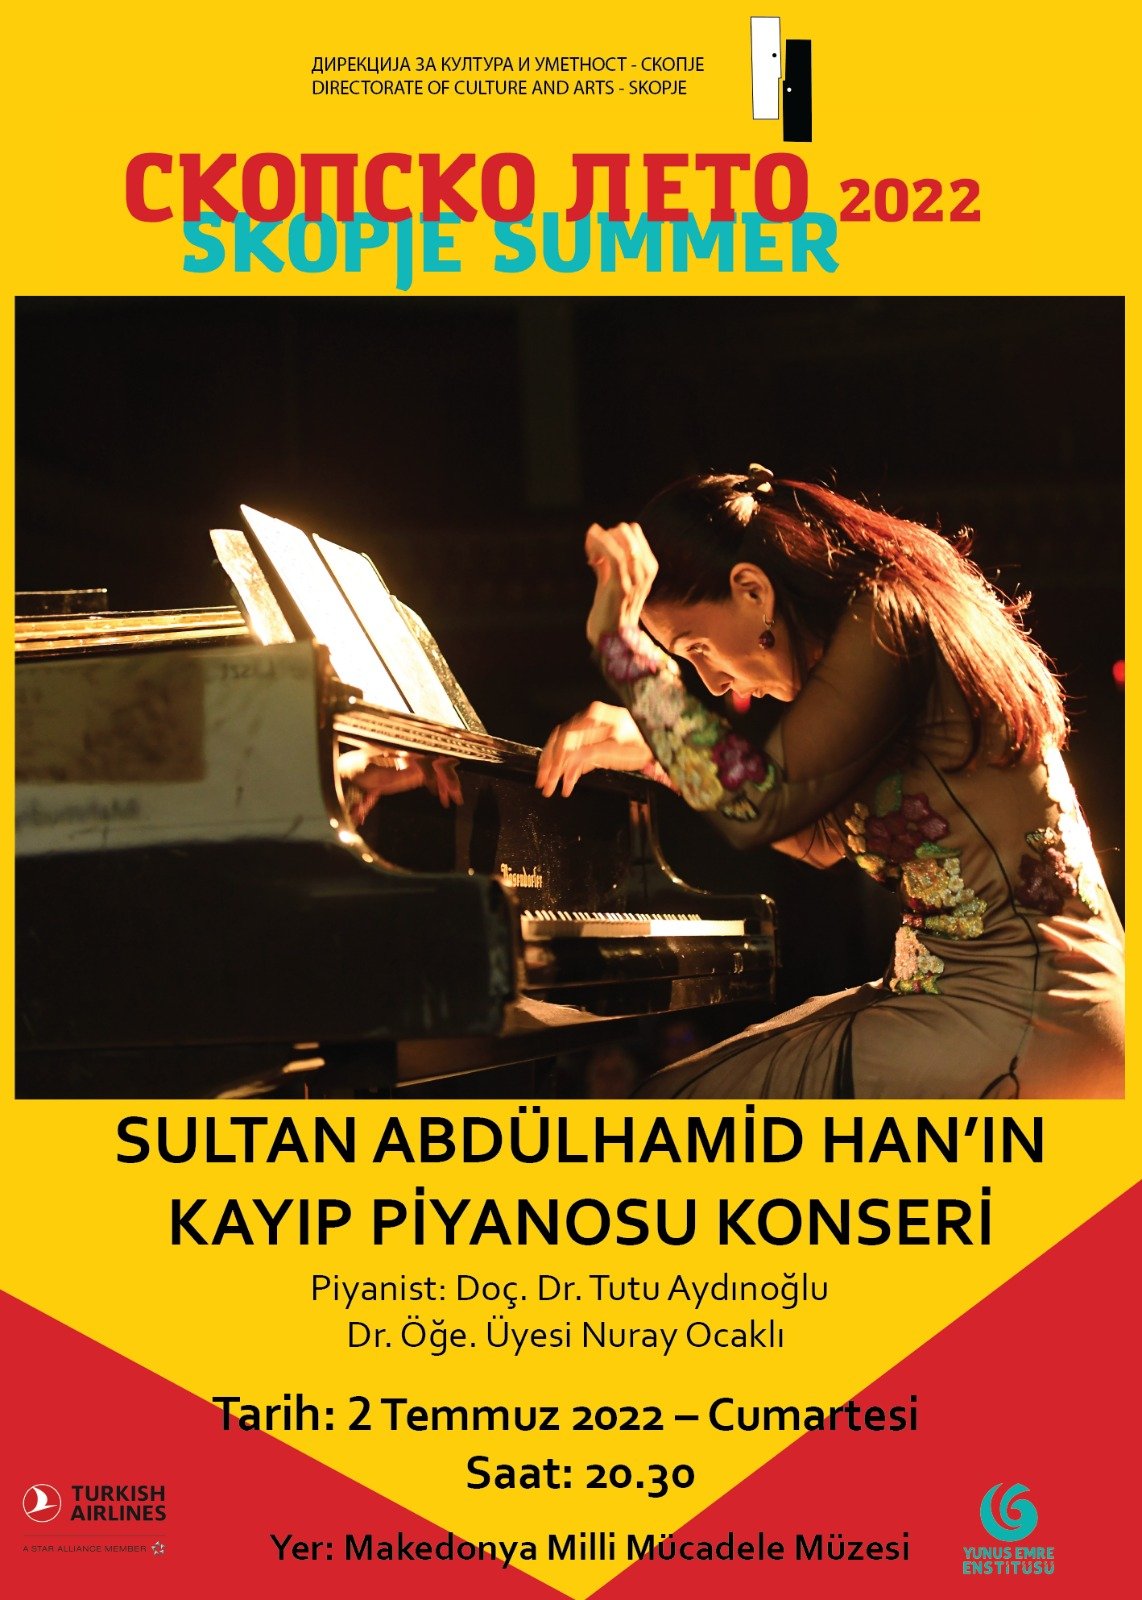 “Sultan II. Abdülhamid Han’ın Kayıp Piyanosu” Üsküp’te sanat severler ile buluşuyor